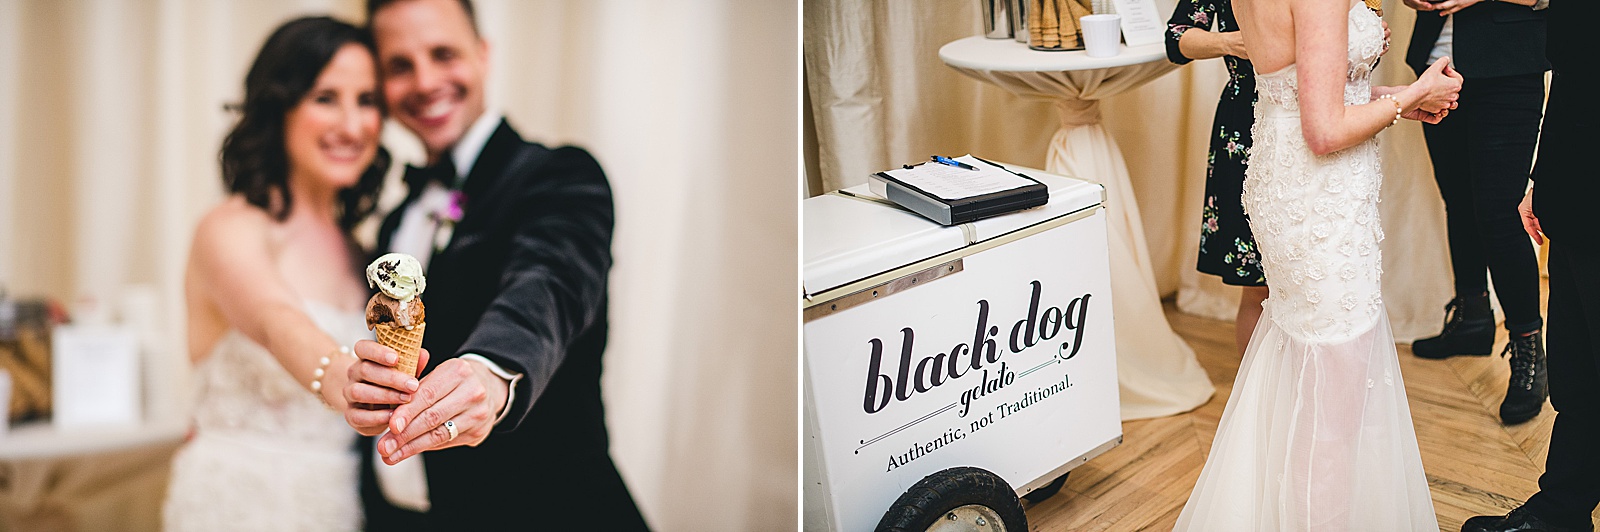 45 black dog icecream at wedding - Chicago Illuminating Company Wedding // Samantha + Jeremy